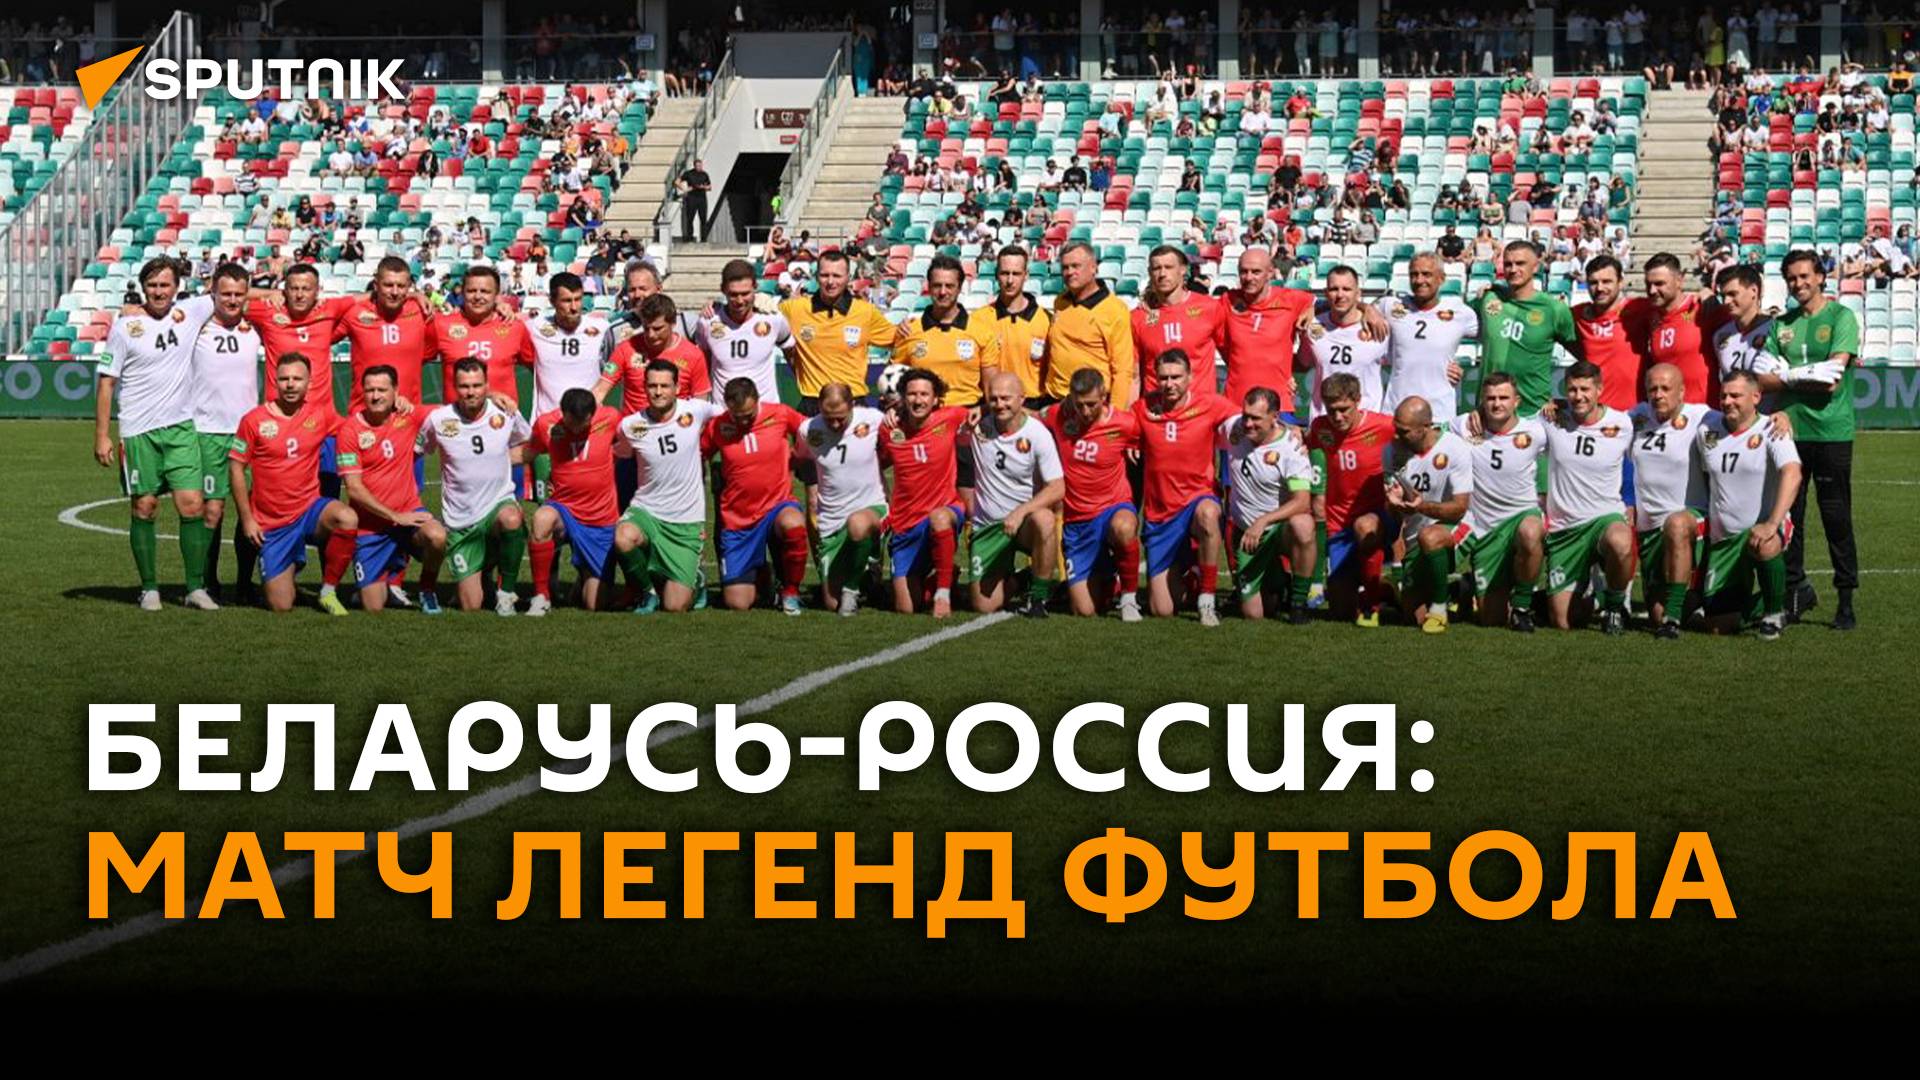 Как прошёл товарищеский матч легенд футбола Беларуси и России